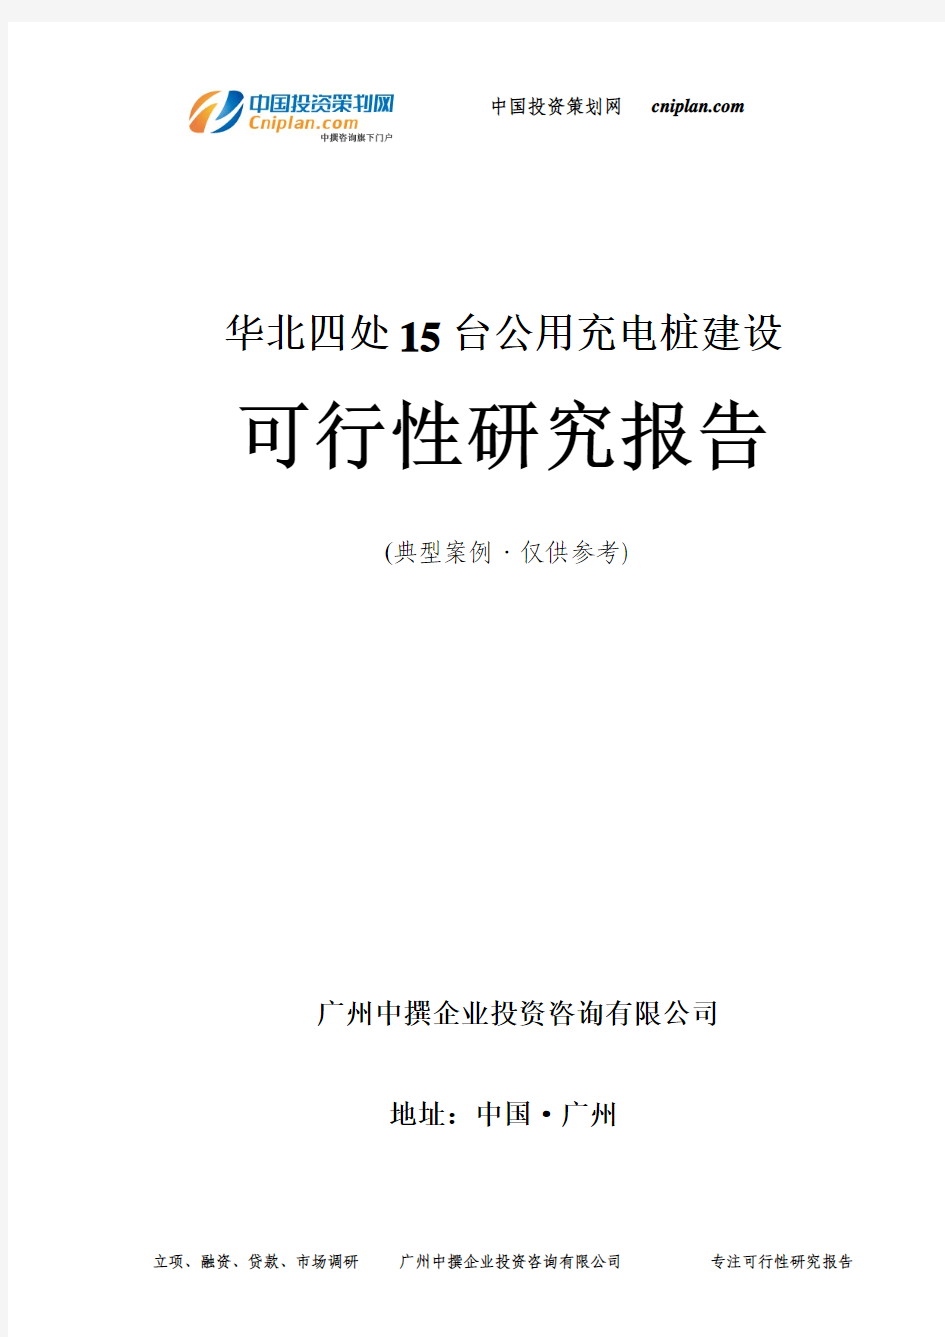 四处15台公用充电桩建设可行性研究报告-广州中撰咨询